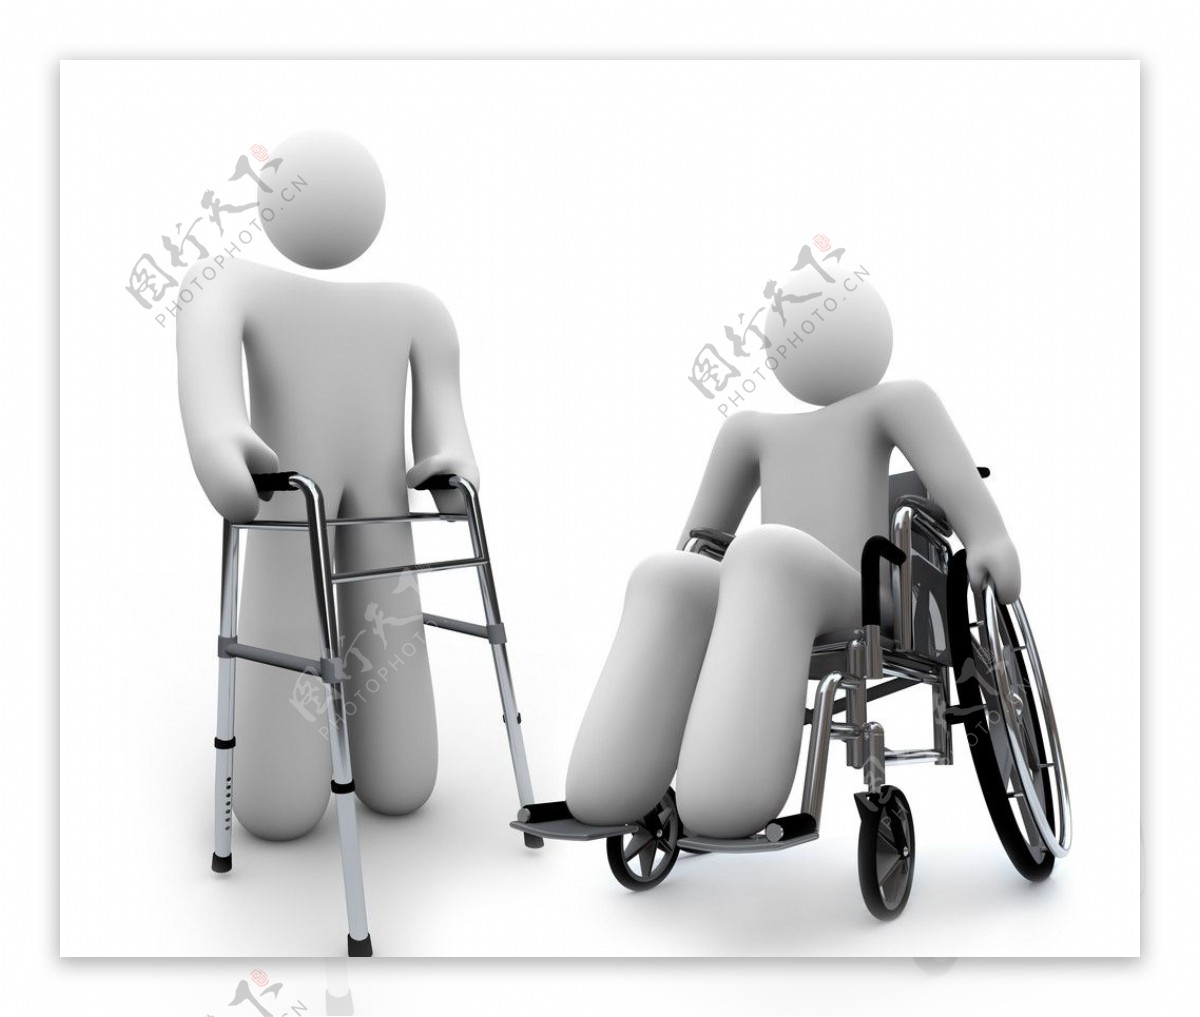 关爱残疾人3d小人图片